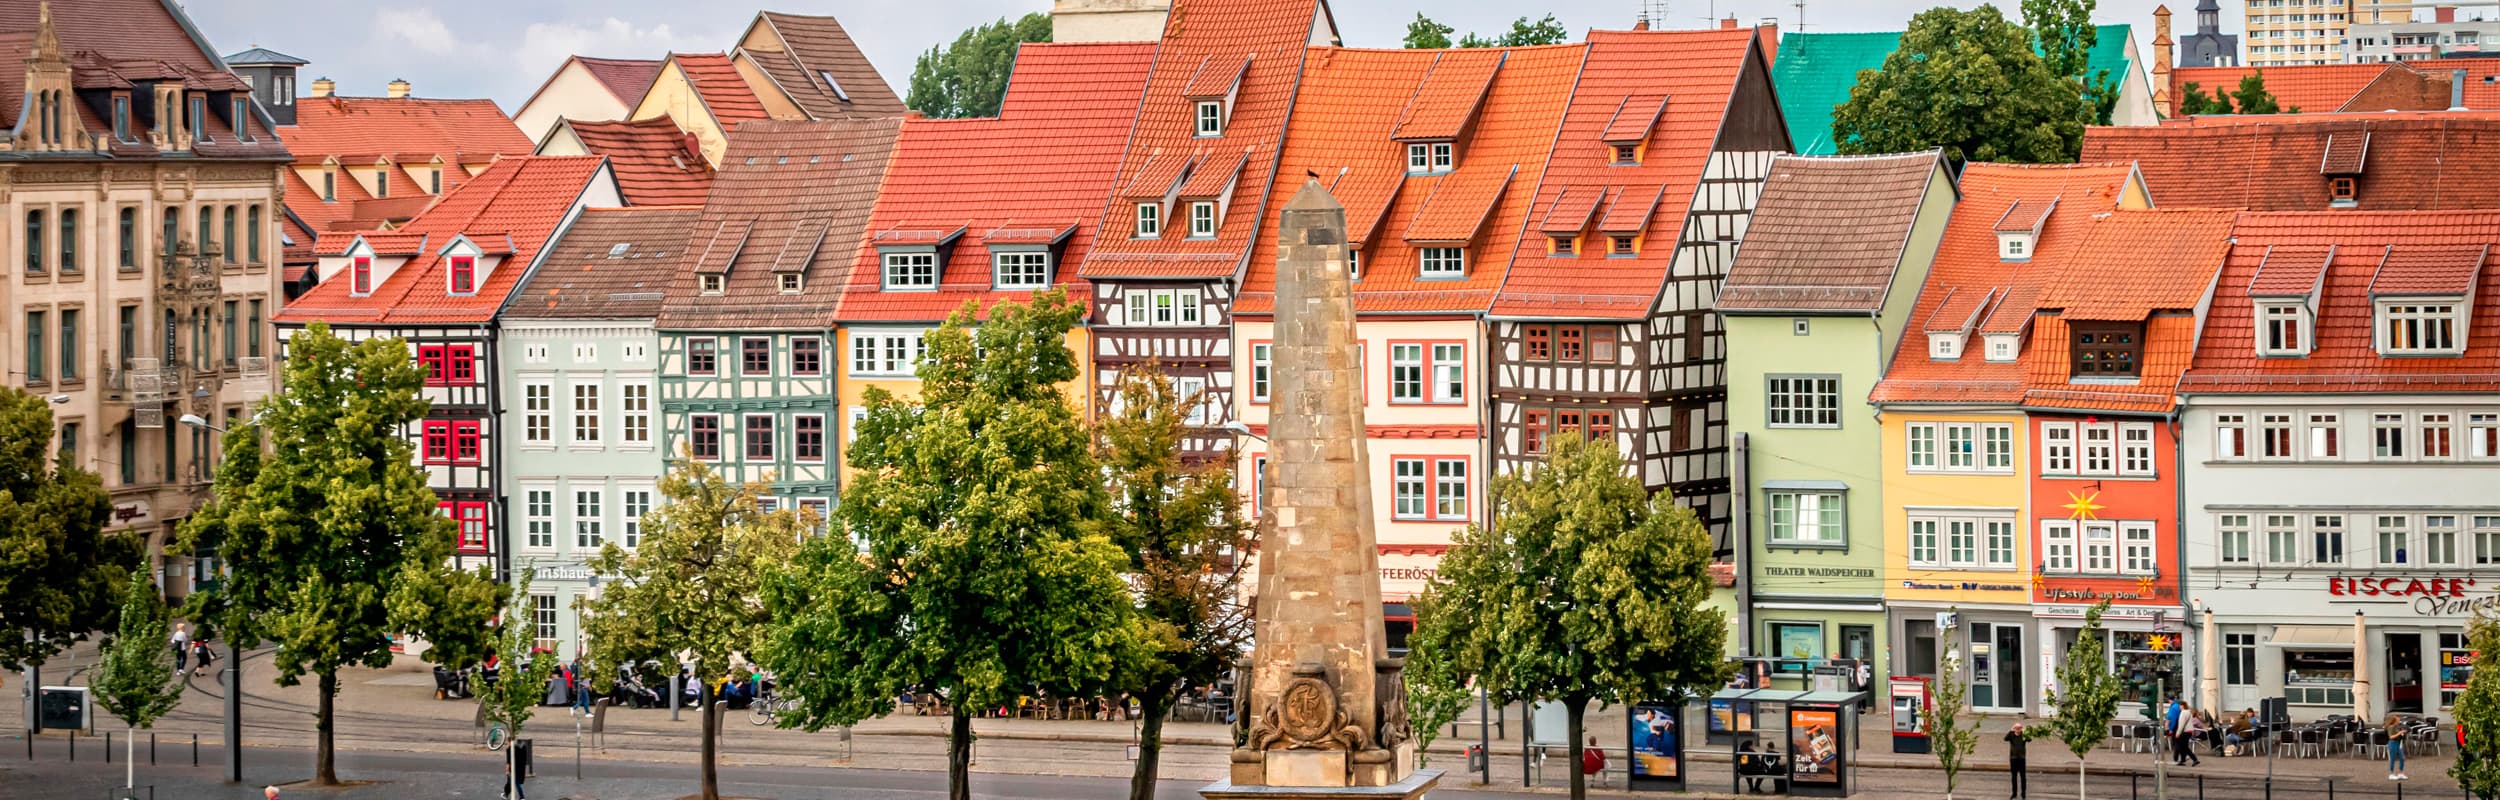 Häuserzeile Altstadt Erfurt